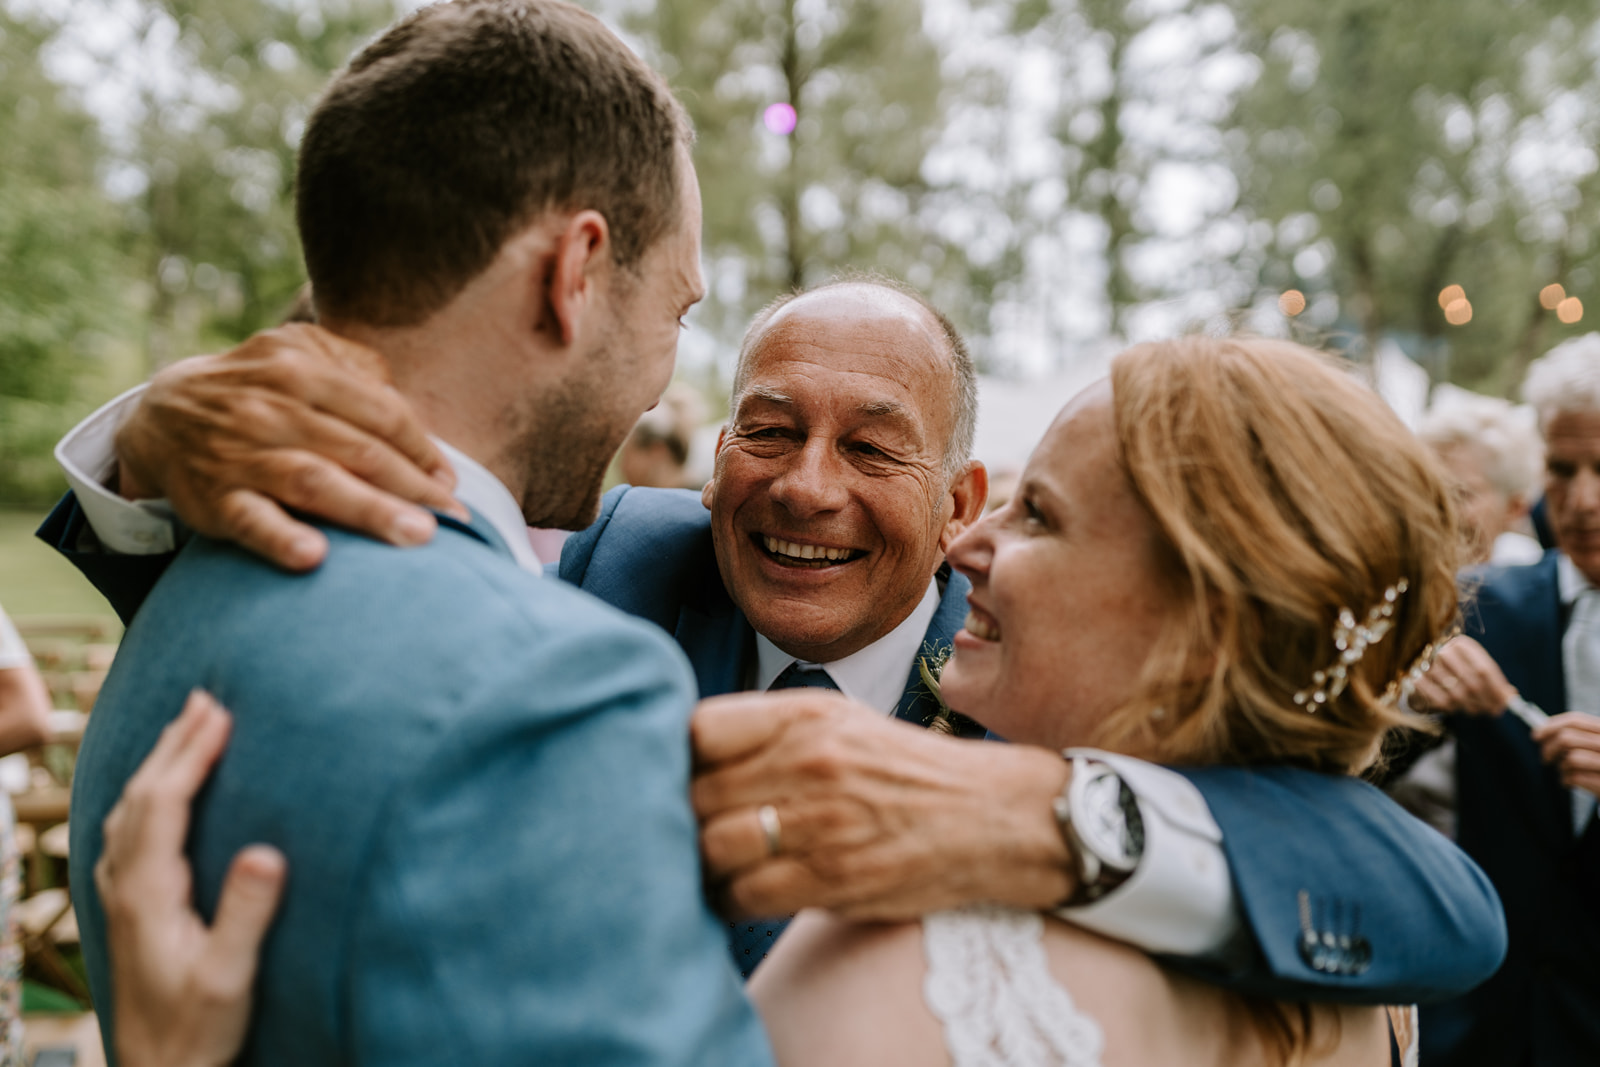 De vader van de bruidegom geeft het bruidspaar een innige knuffel met het bos en gasten op de achtergrond.